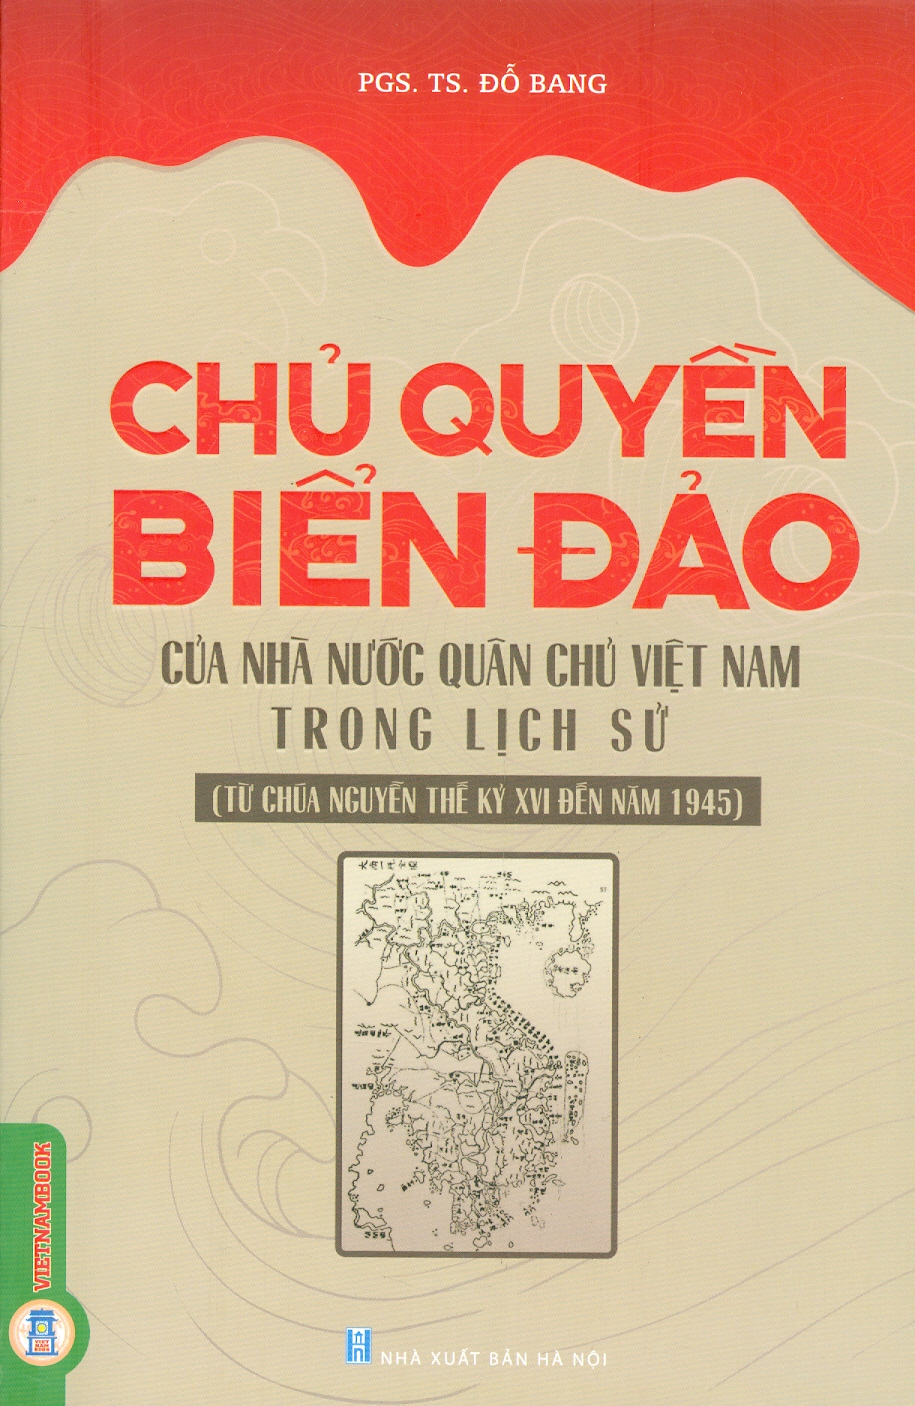 Chủ Quyền Biển Đảo Của Nhà Nước Quân Chủ Việt Nam Trong Lịch Sử (Từ Chúa Nguyễn Thế kỷ XVI Đến Năm 1945)